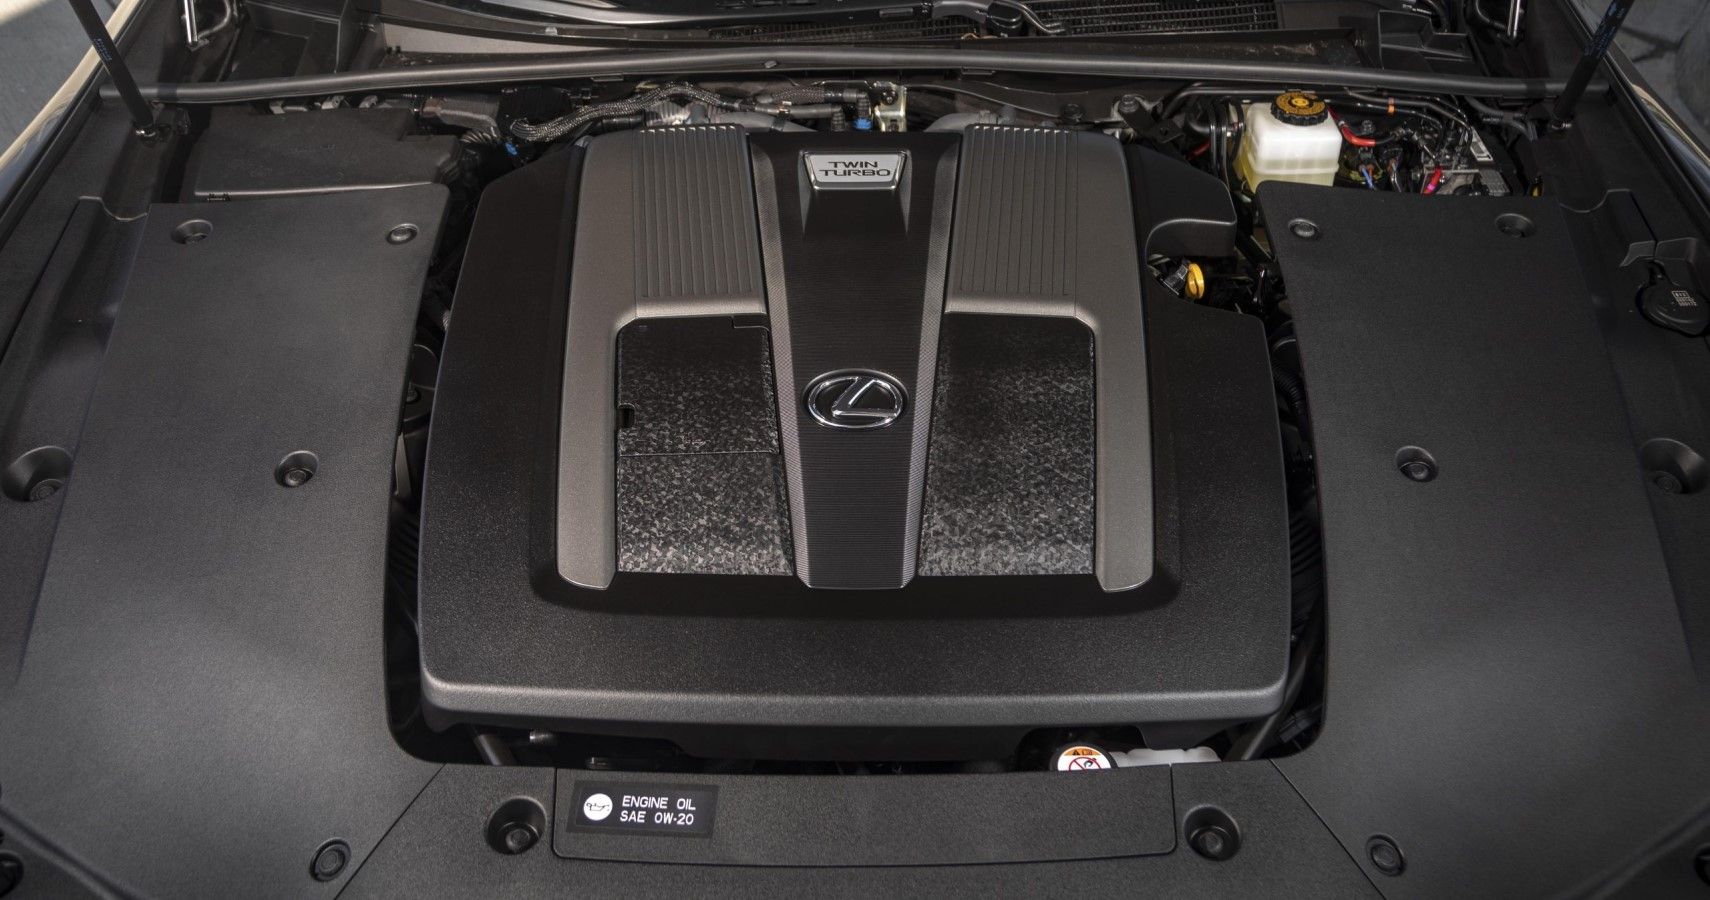 2022 Lexus LS V6 engine bay view